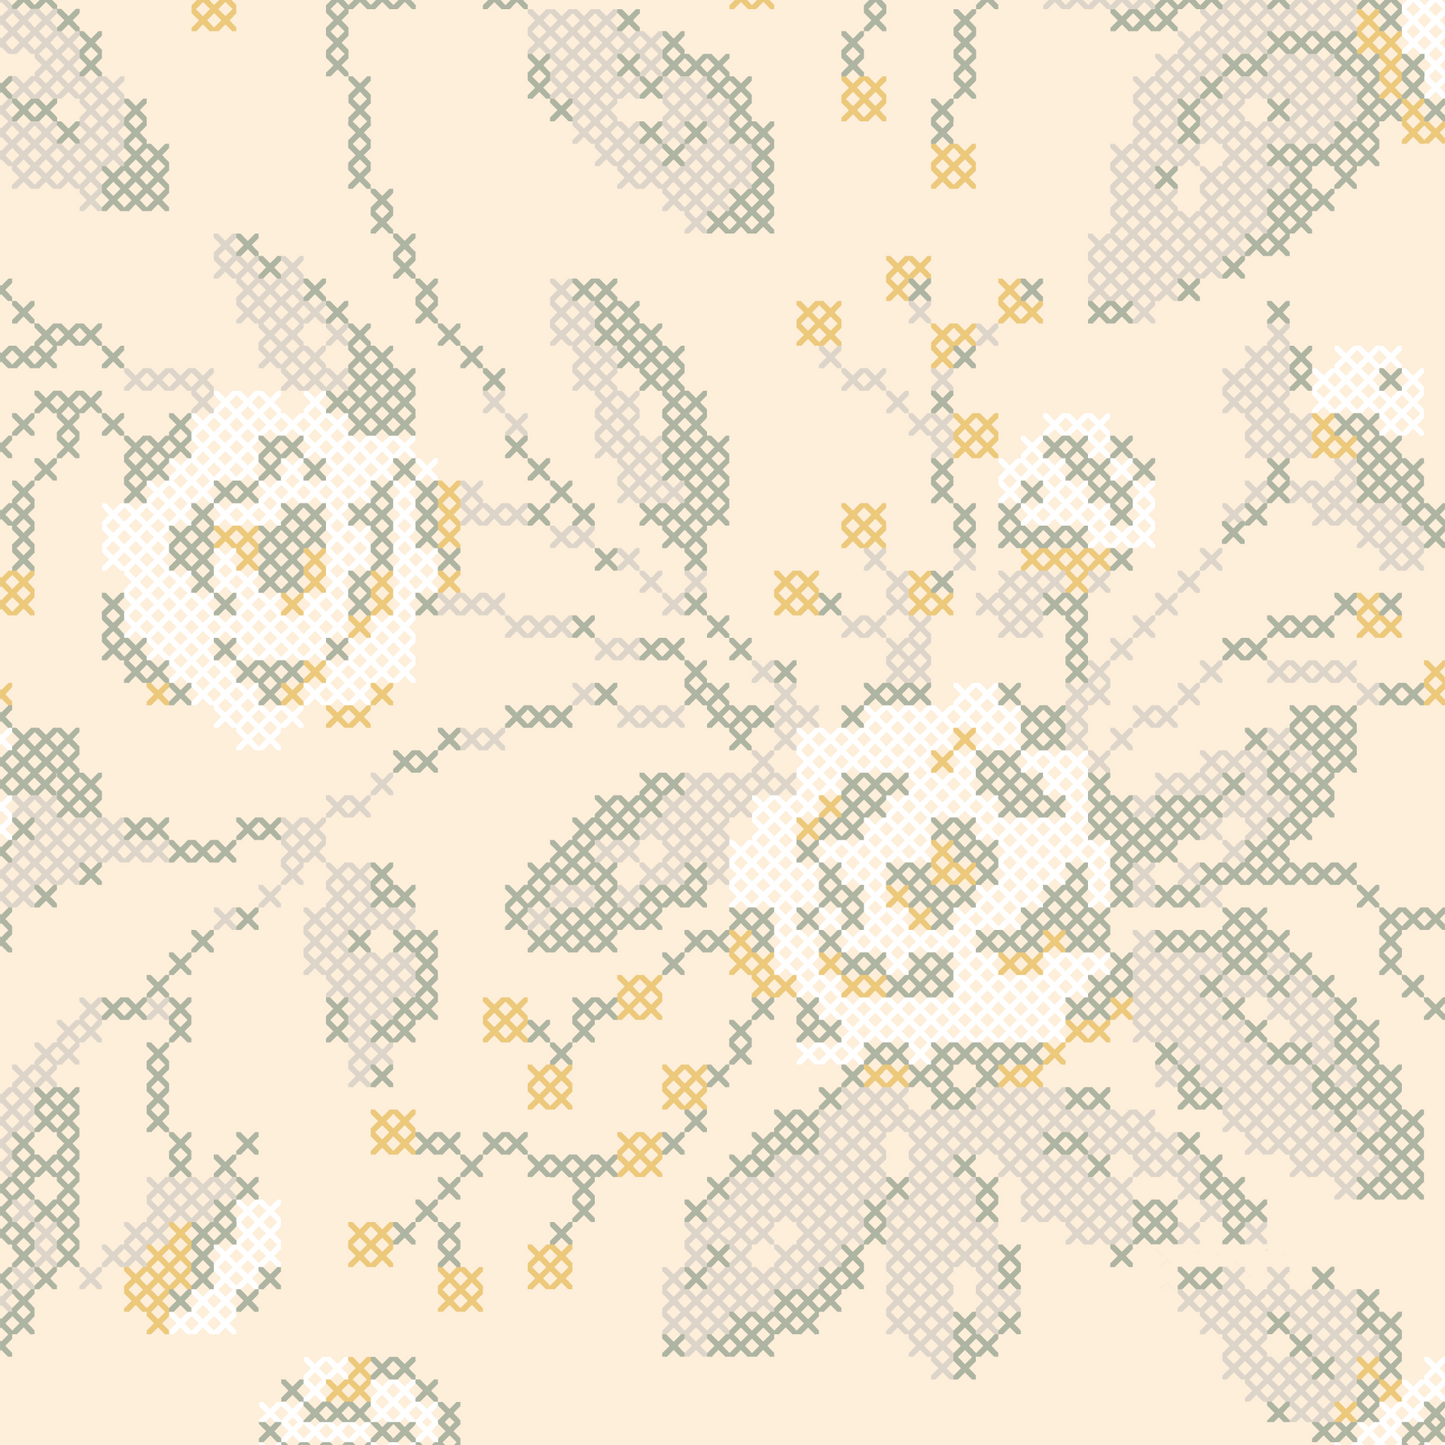 Cross Stitch Flowers Wallpaper - Butter Yellow